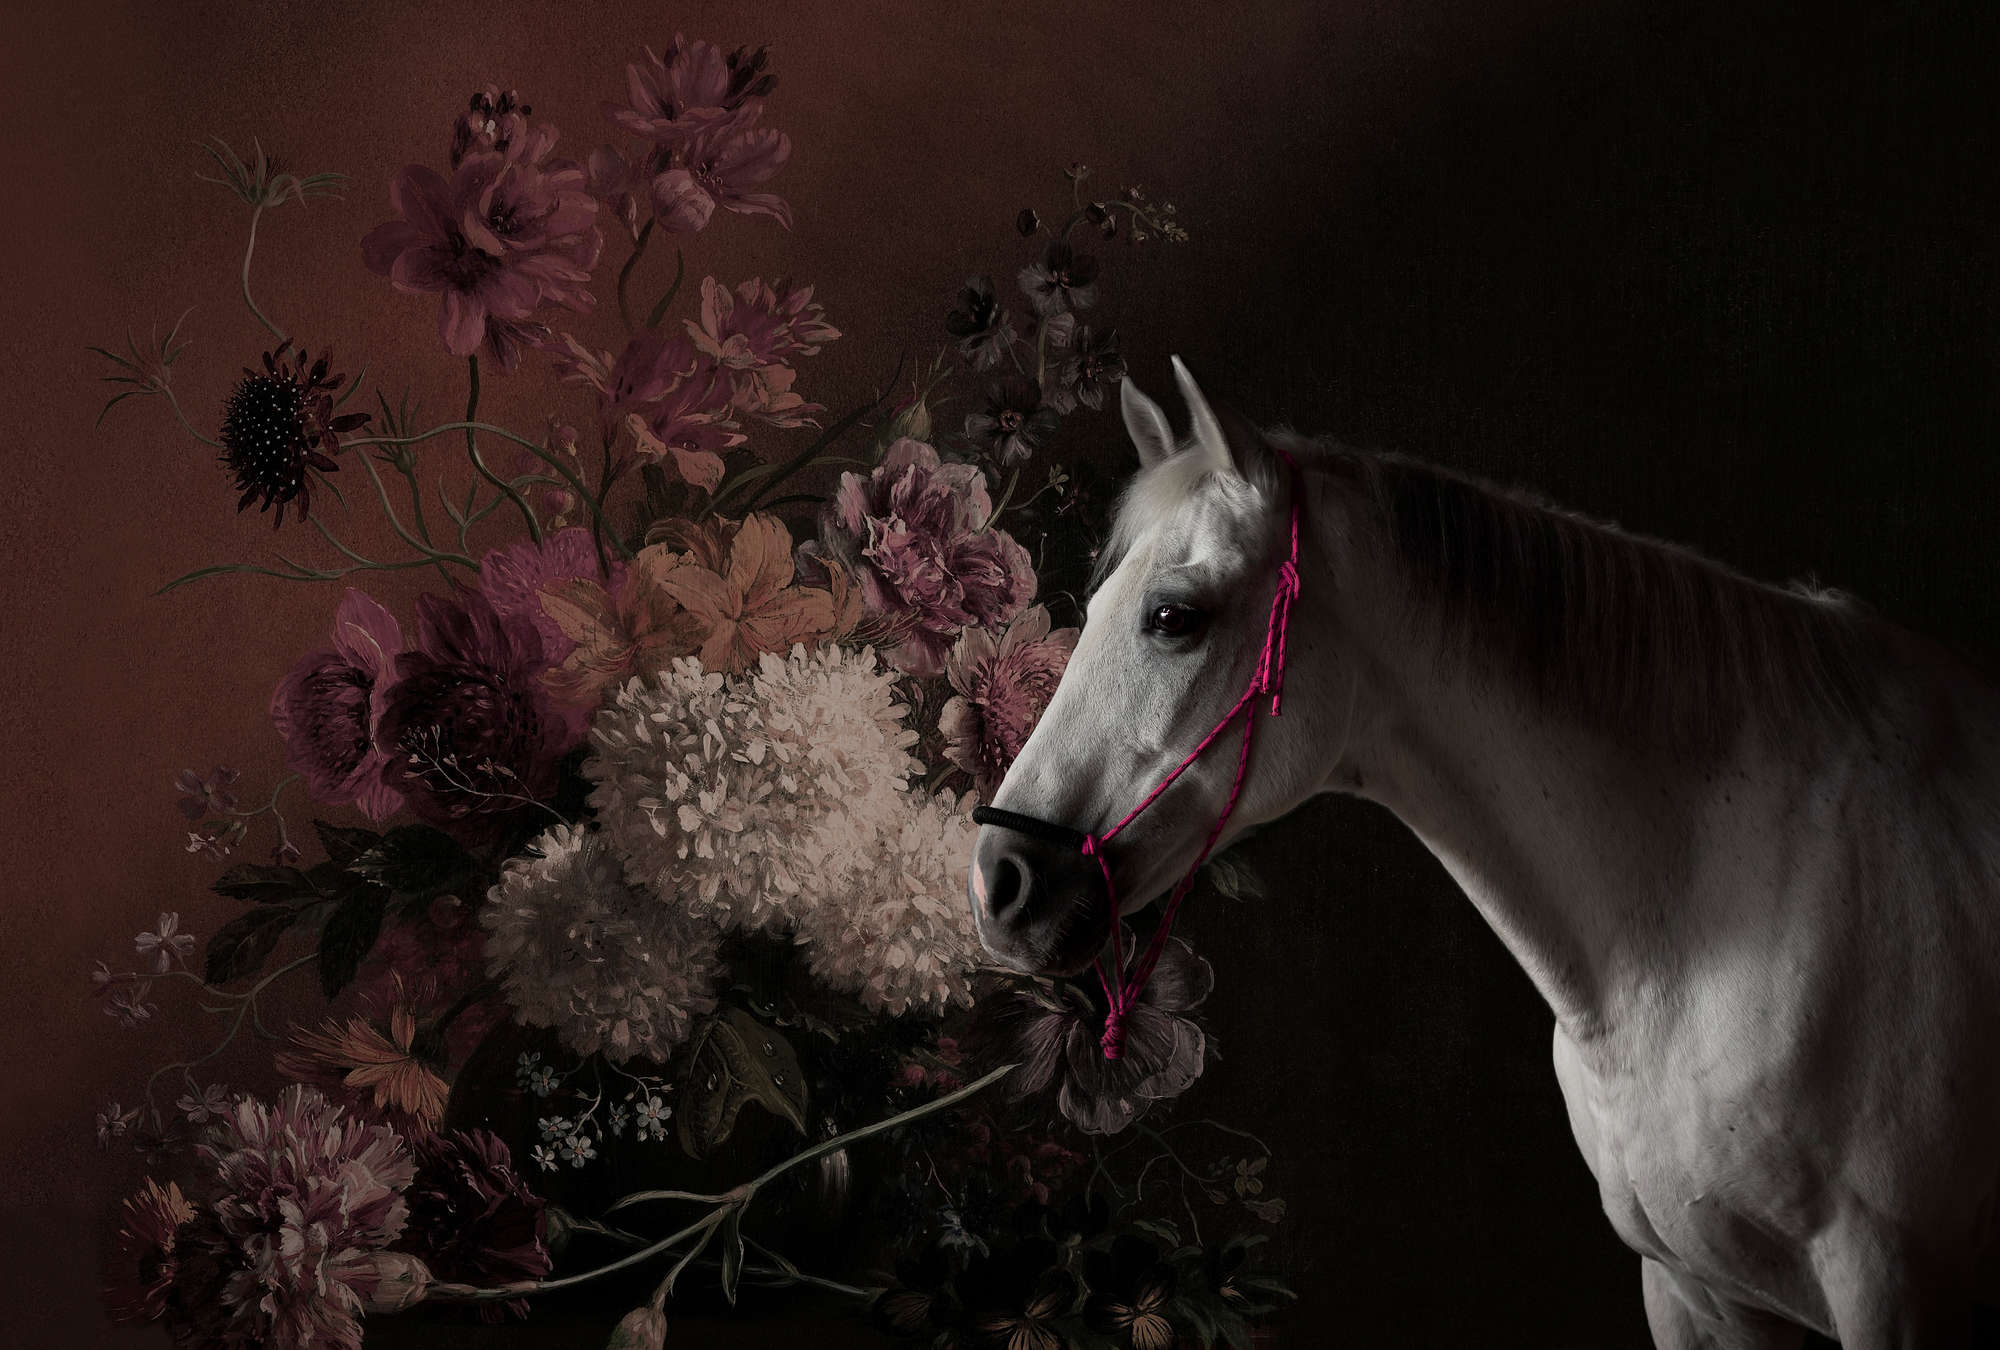             Mural de caballos con flores - Walls by Patel
        